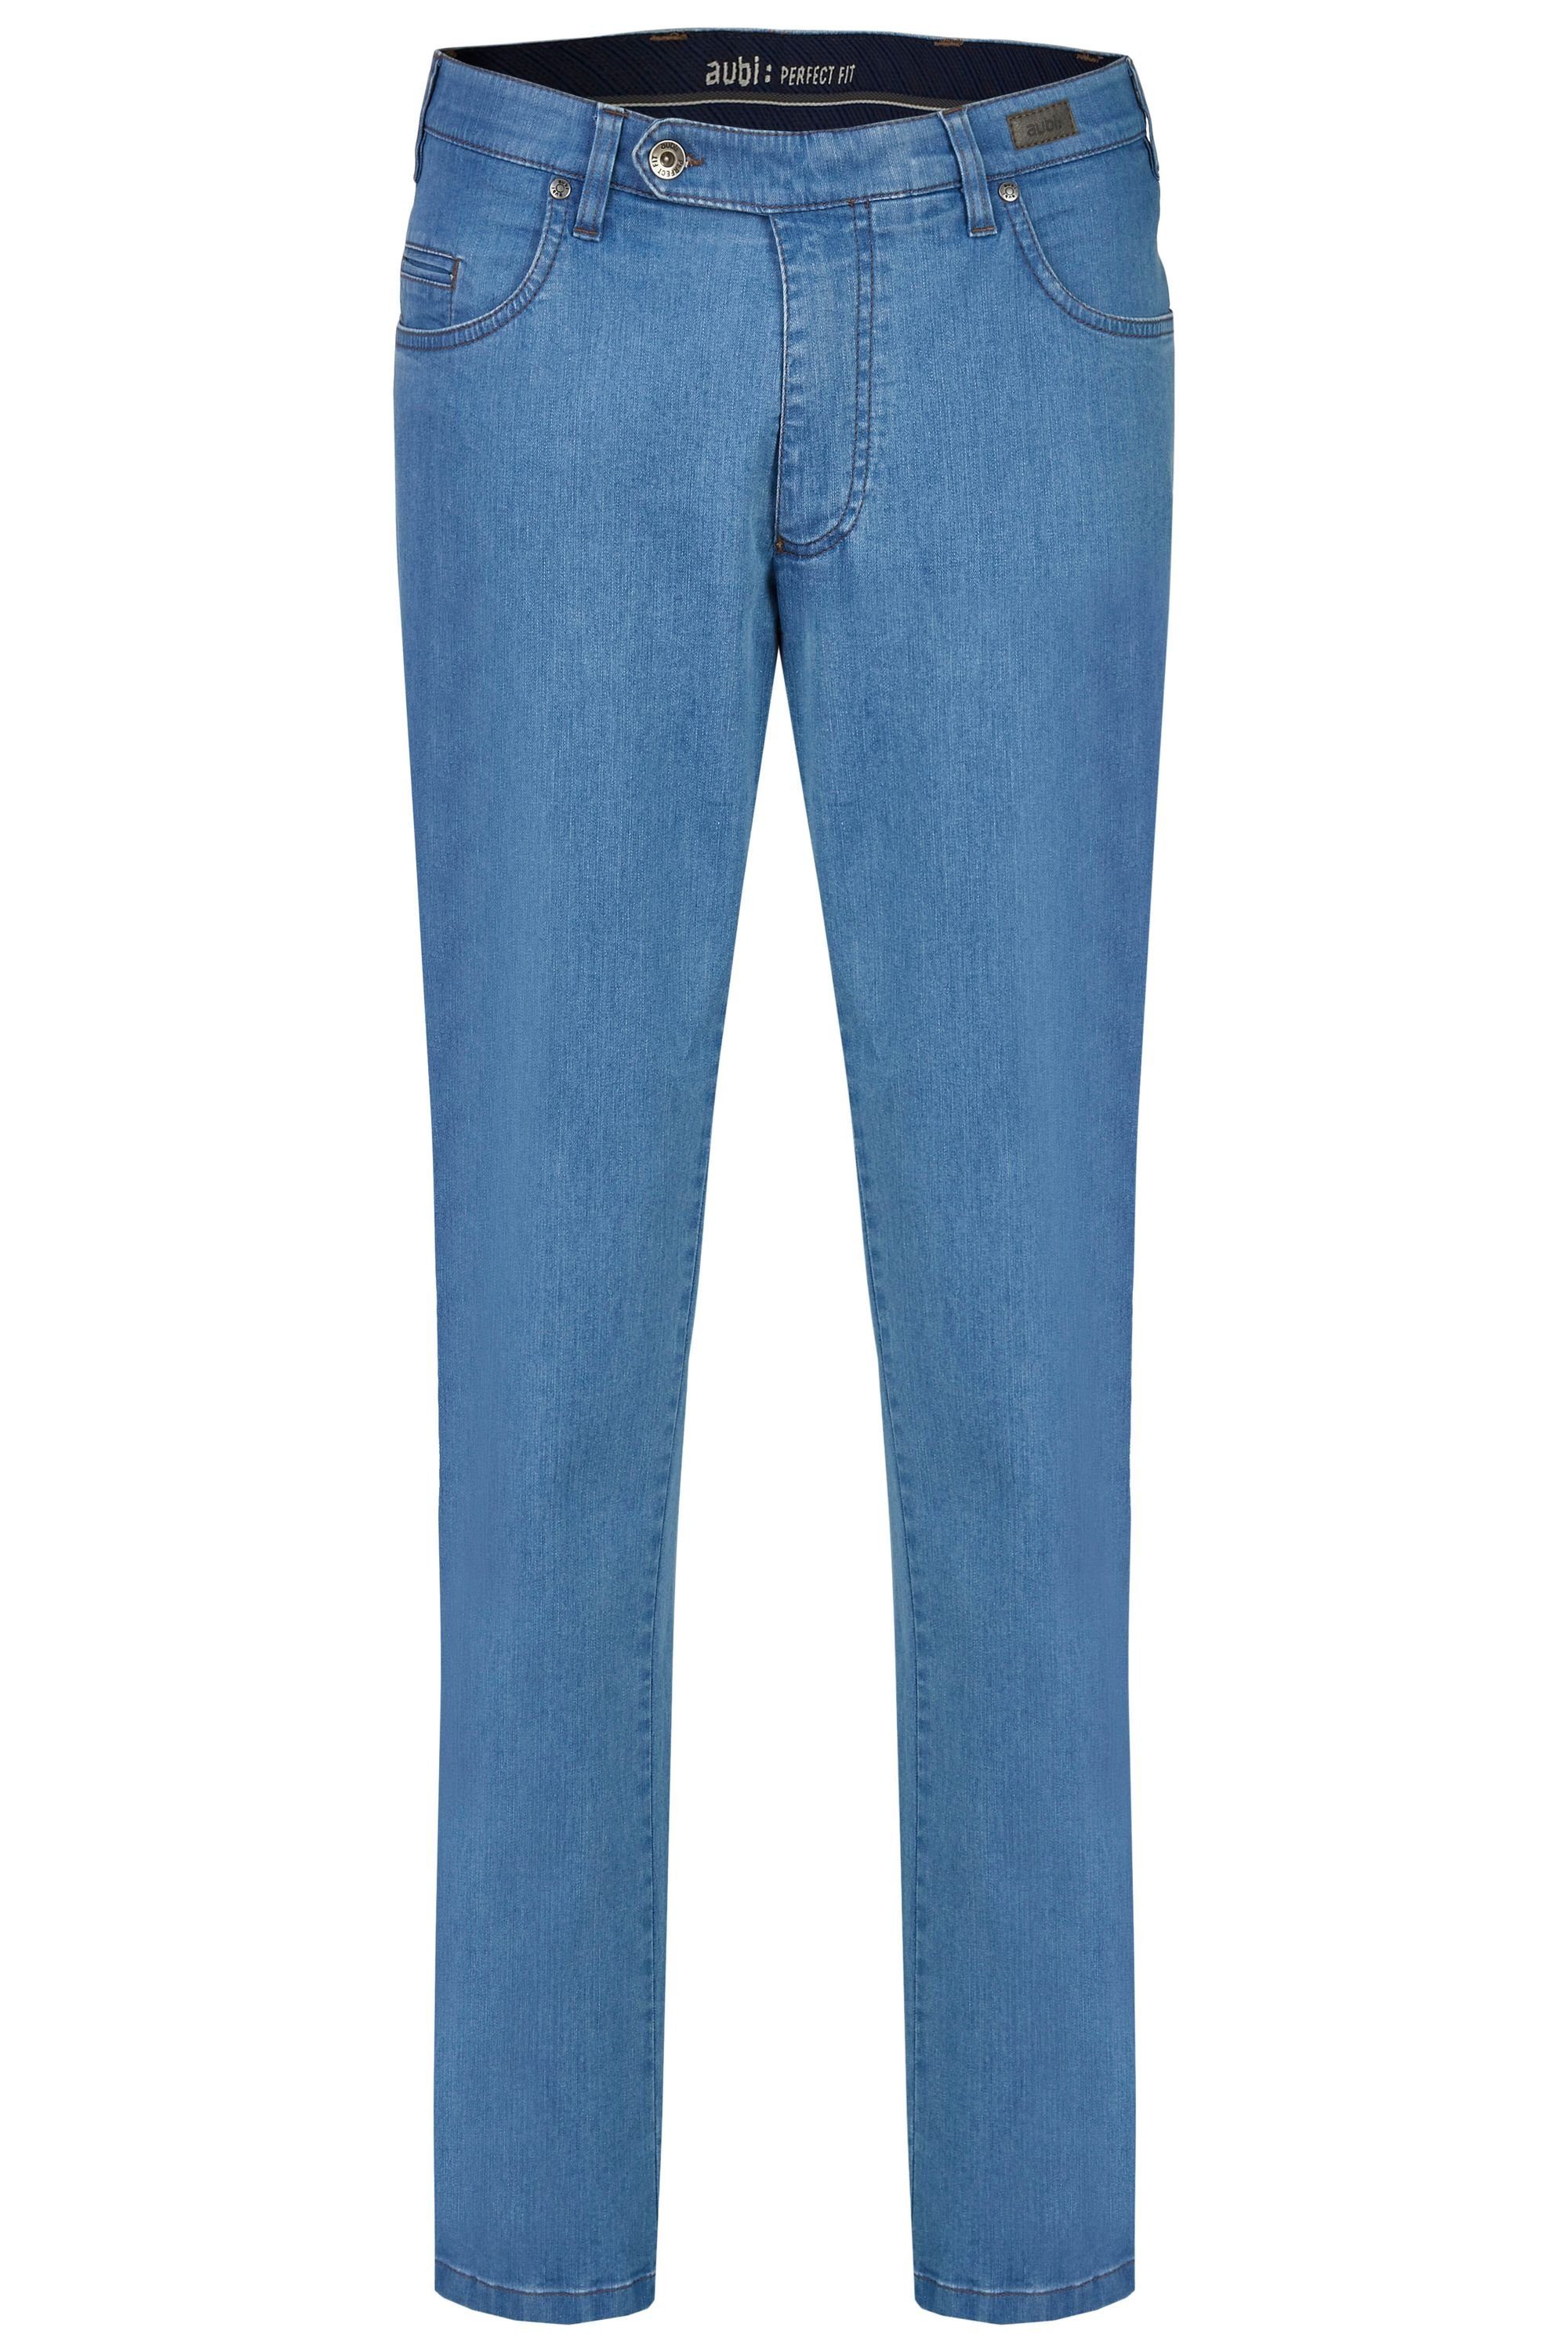 Bequeme Jeans Stretch aus (43) aubi Herren aubi: bleached Perfect Modell Jeans Hose Fit High Sommer Flex Baumwolle 577